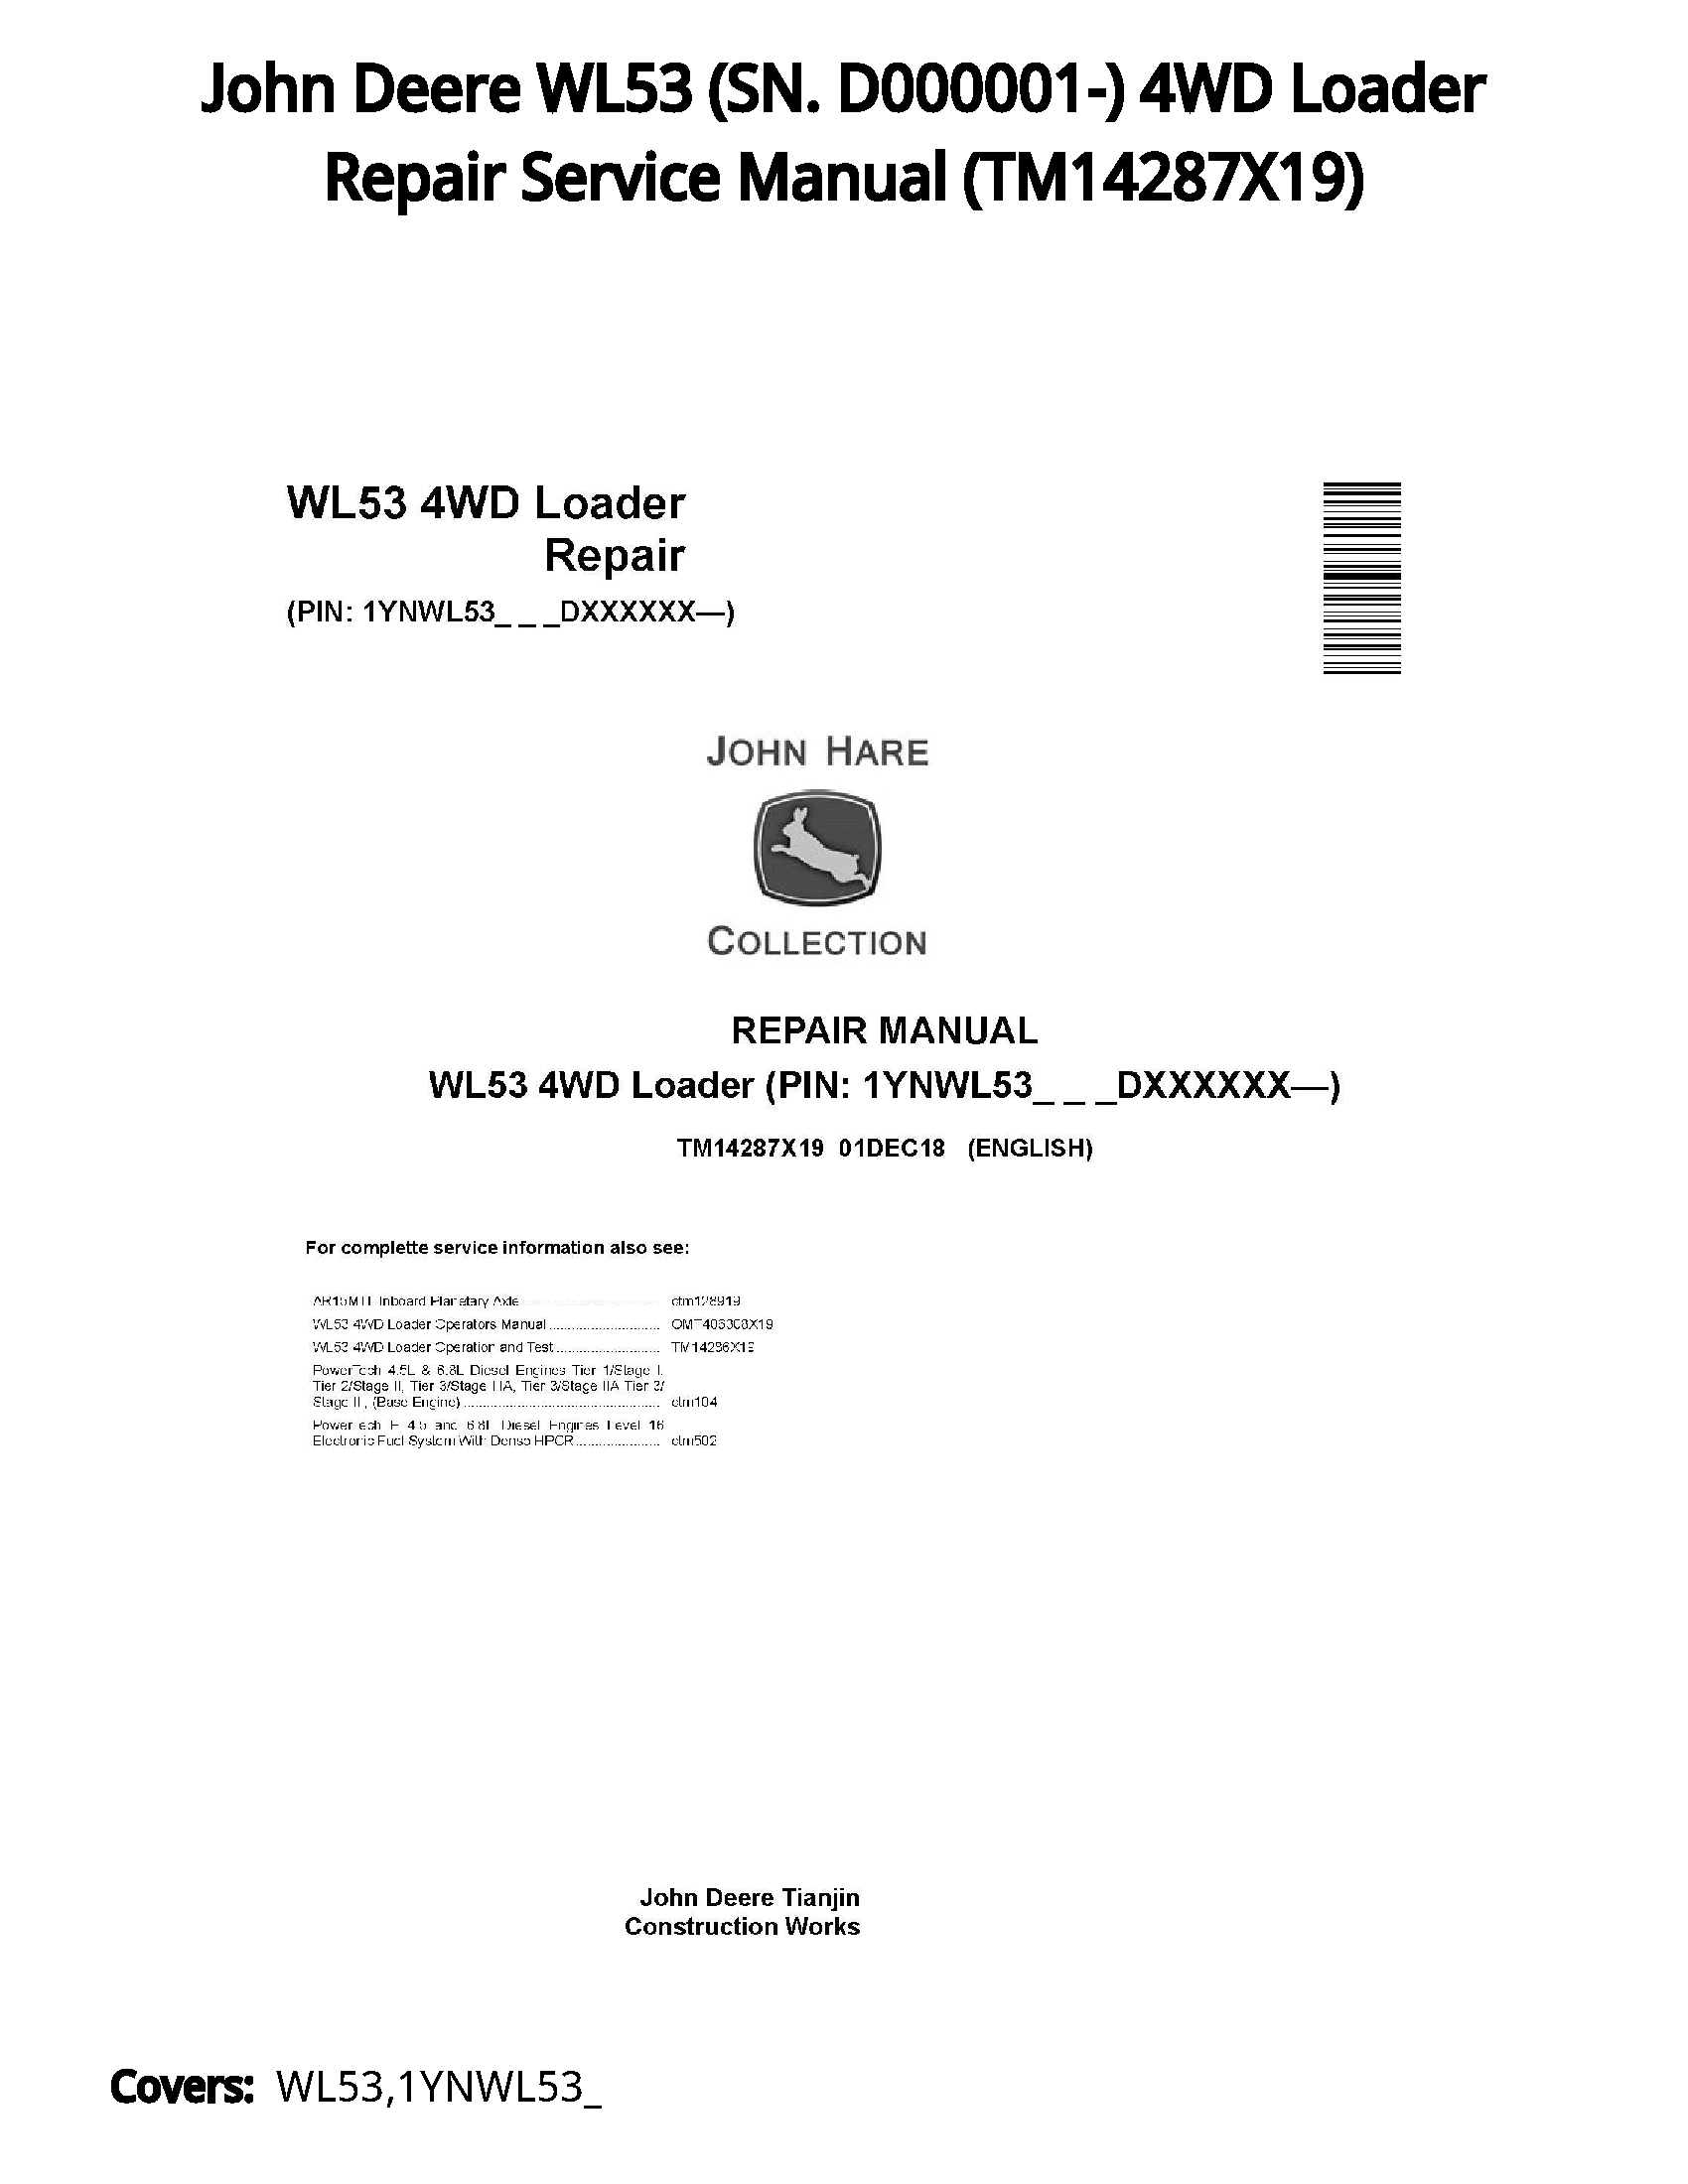 John Deere WL53 (SN. D000001-) 4WD Loader Repair Service Manual - TM14287X19